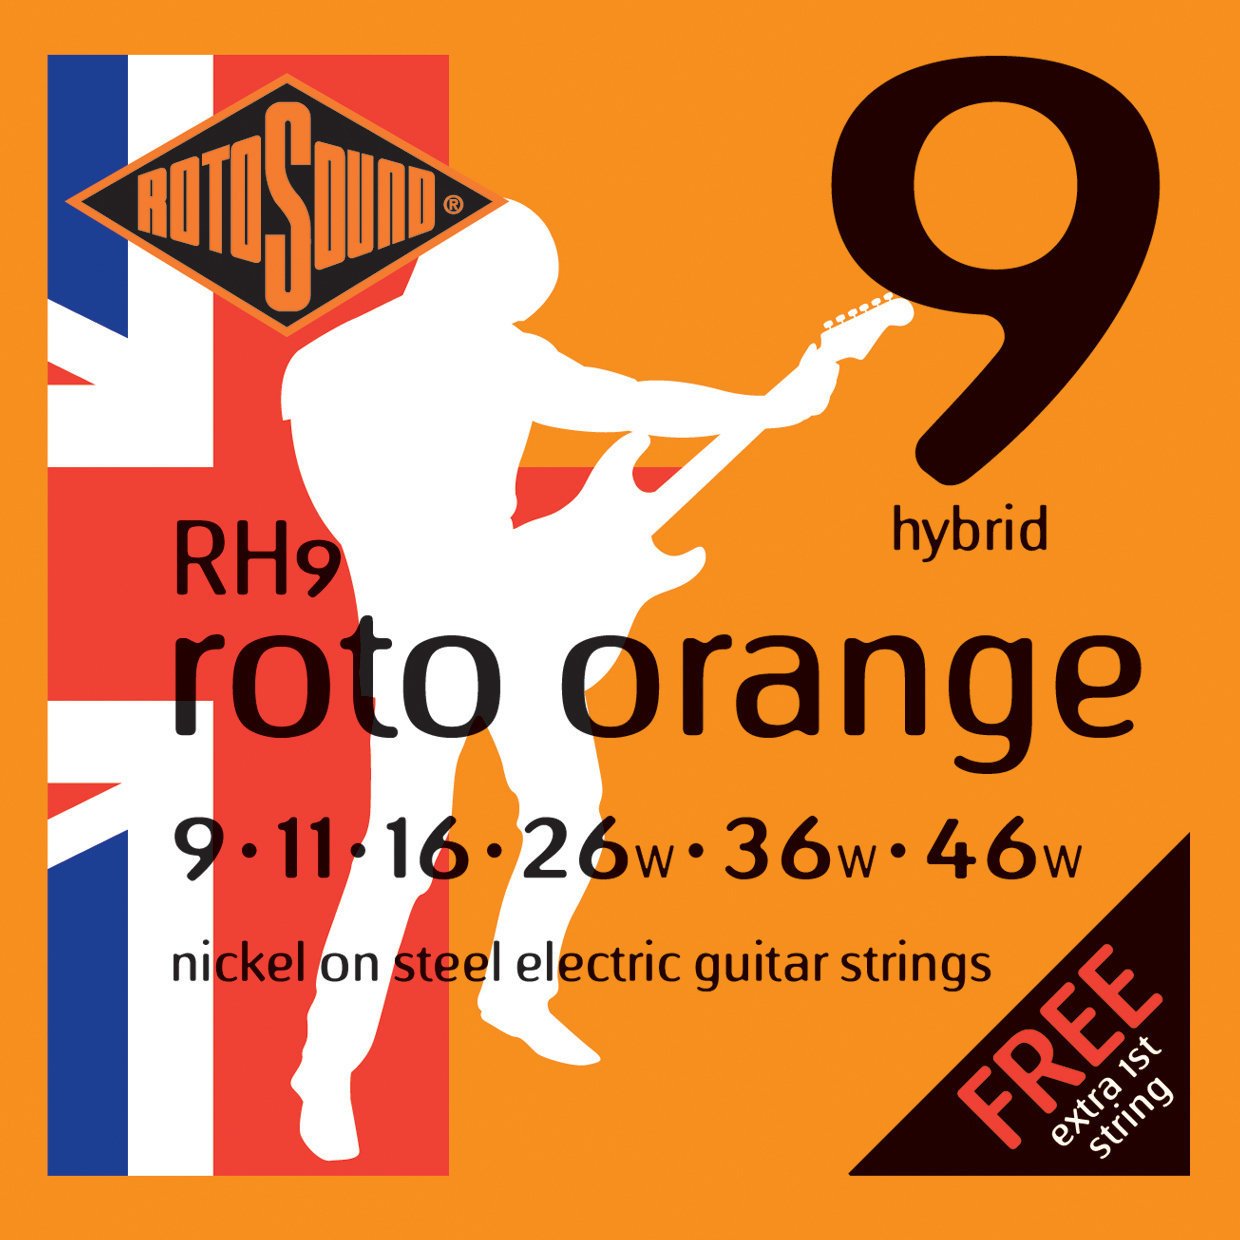 E-guitar strings Rotosound RH9